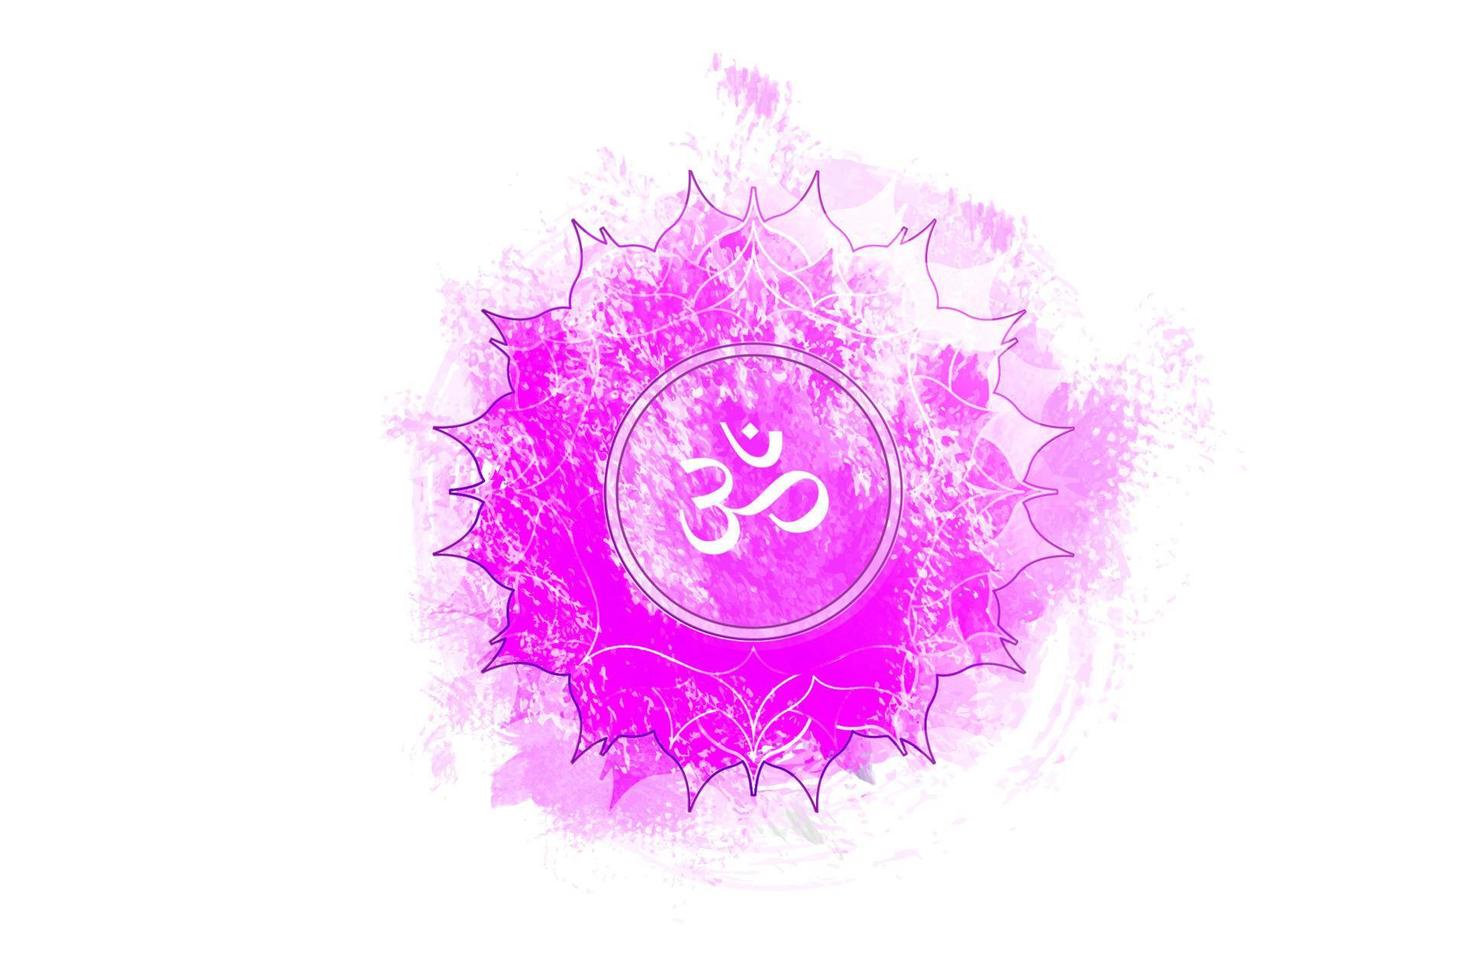 séptimo chakra de sahasrara, plantilla de logotipo de chakra de la corona en estilo acuarela. meditación de signo sacro púrpura, icono de mandala redondo de yoga. el símbolo om en el centro, vector aislado sobre fondo blanco